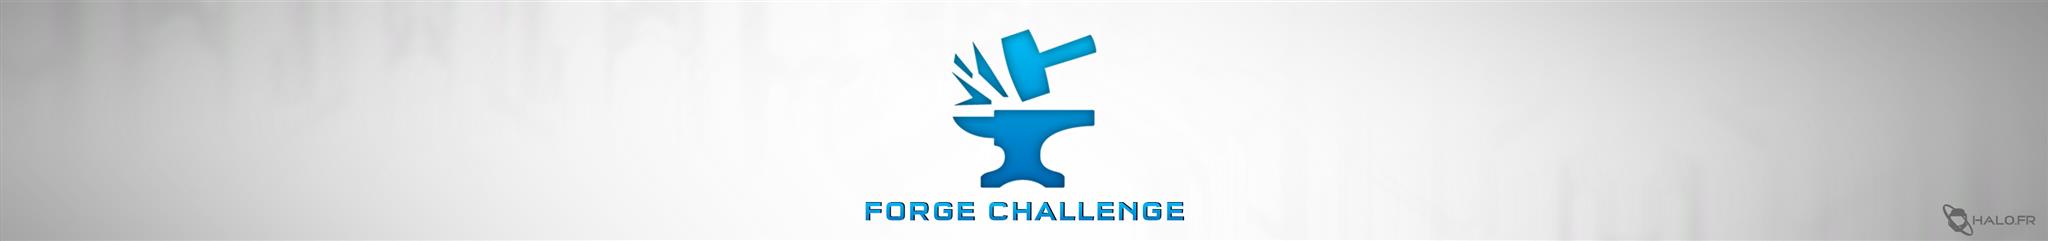 Forge Challenge | Halo.fr